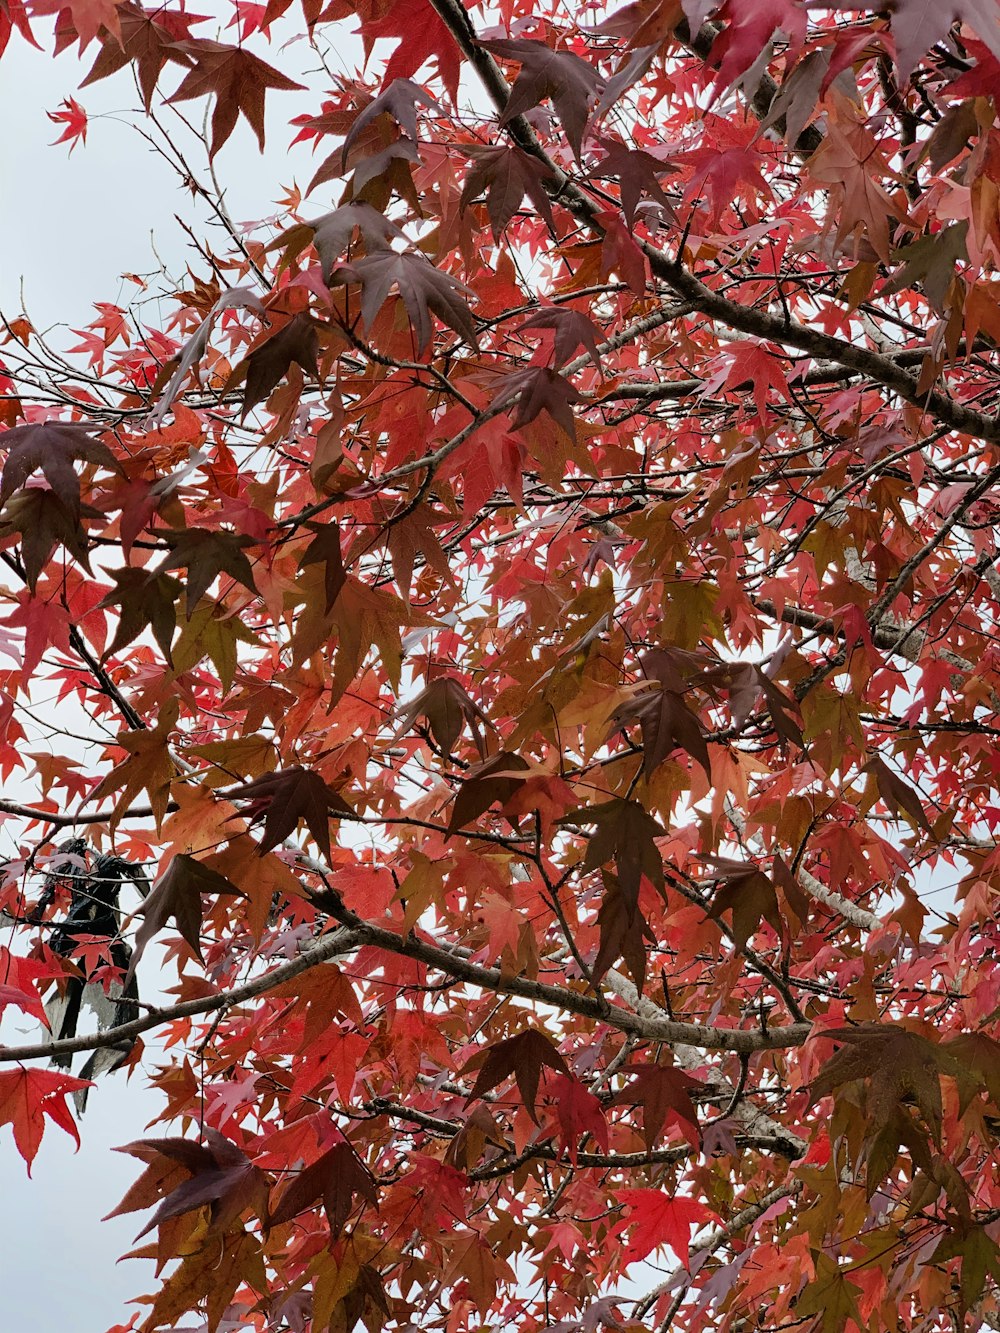 albero delle foglie rosse e marroni